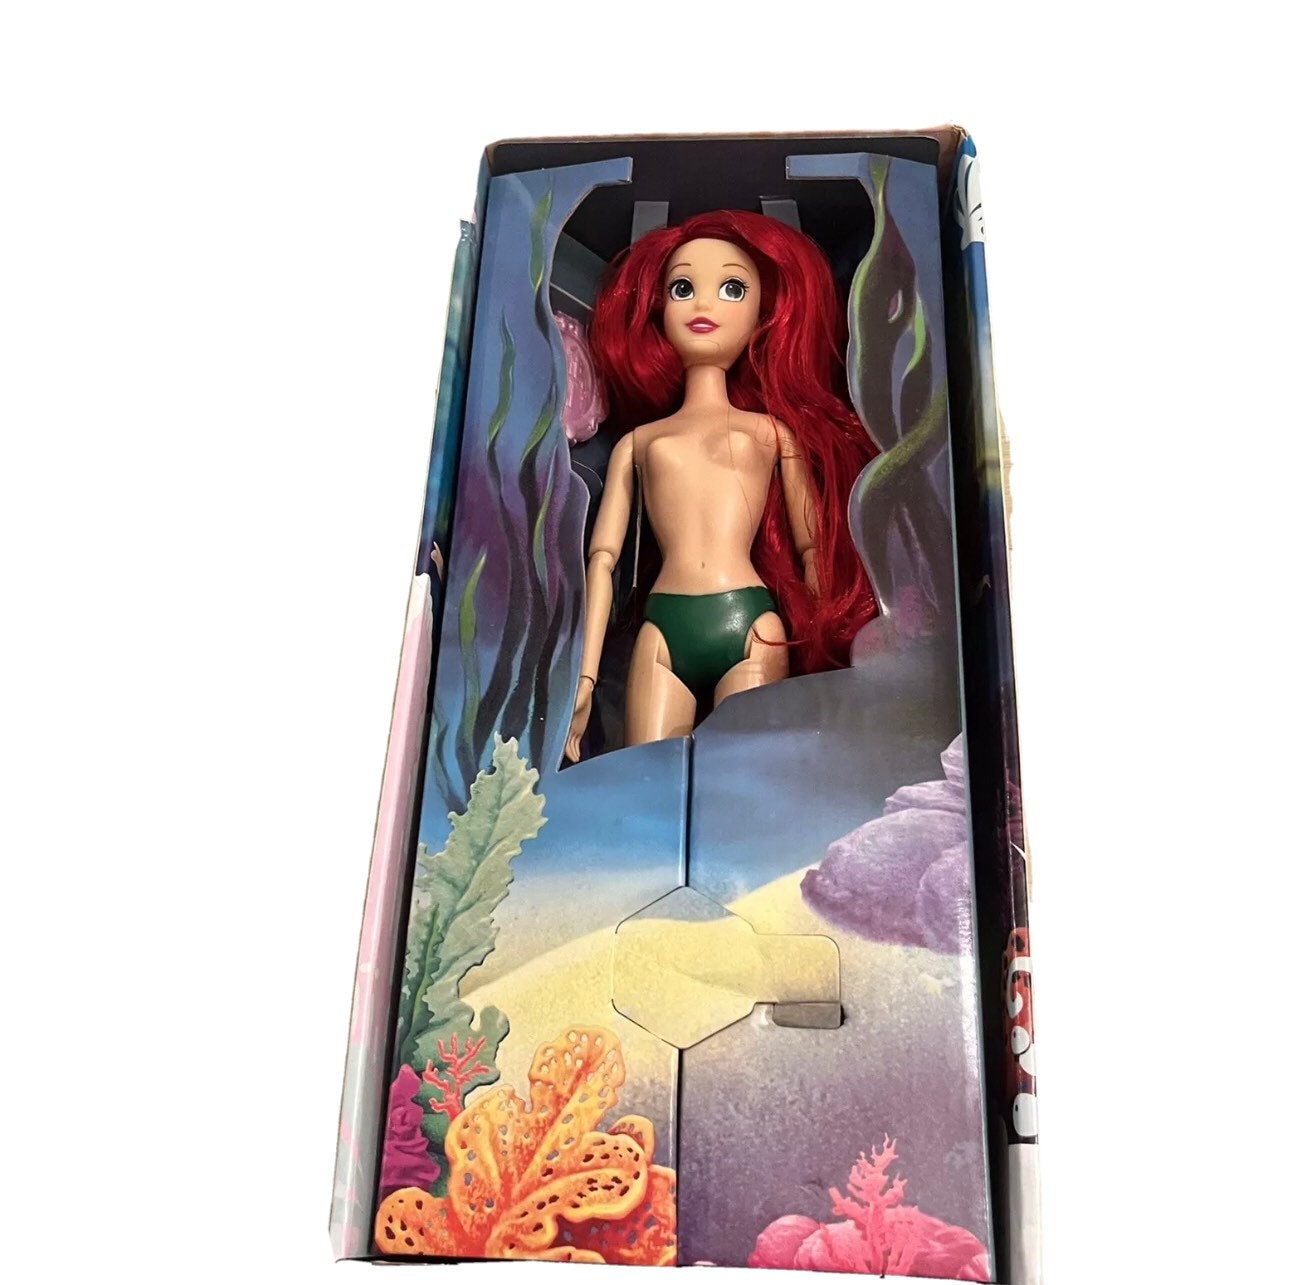 Disney Princesses Style Series poupée mannequin Ariel, poupée de